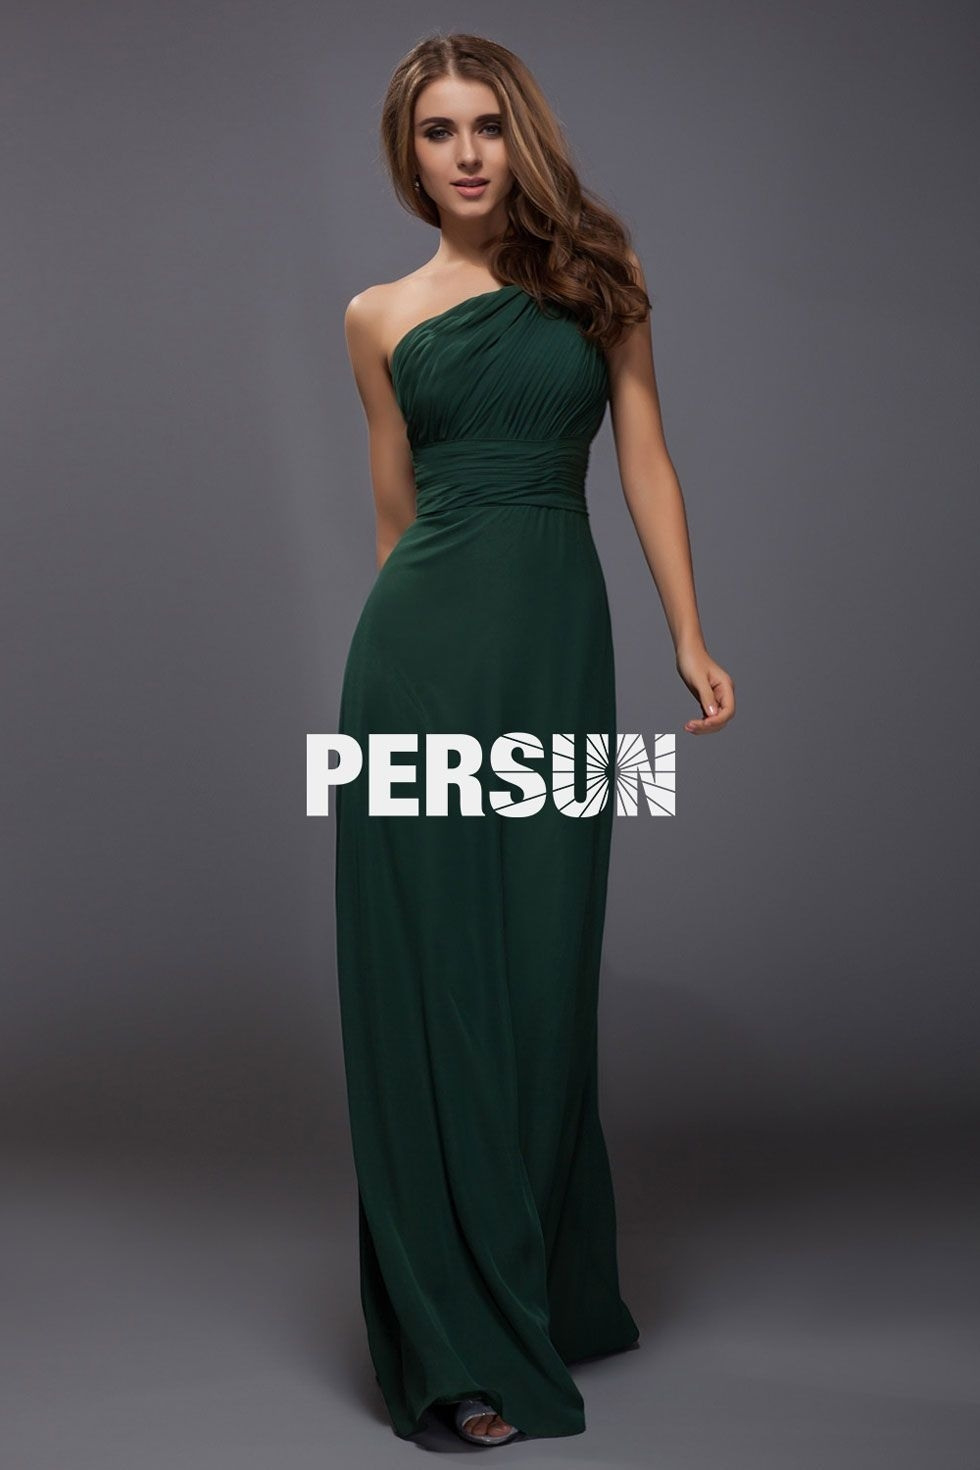 17 Elegant Kleid Grün Festlich Vertrieb Top Kleid Grün Festlich Bester Preis